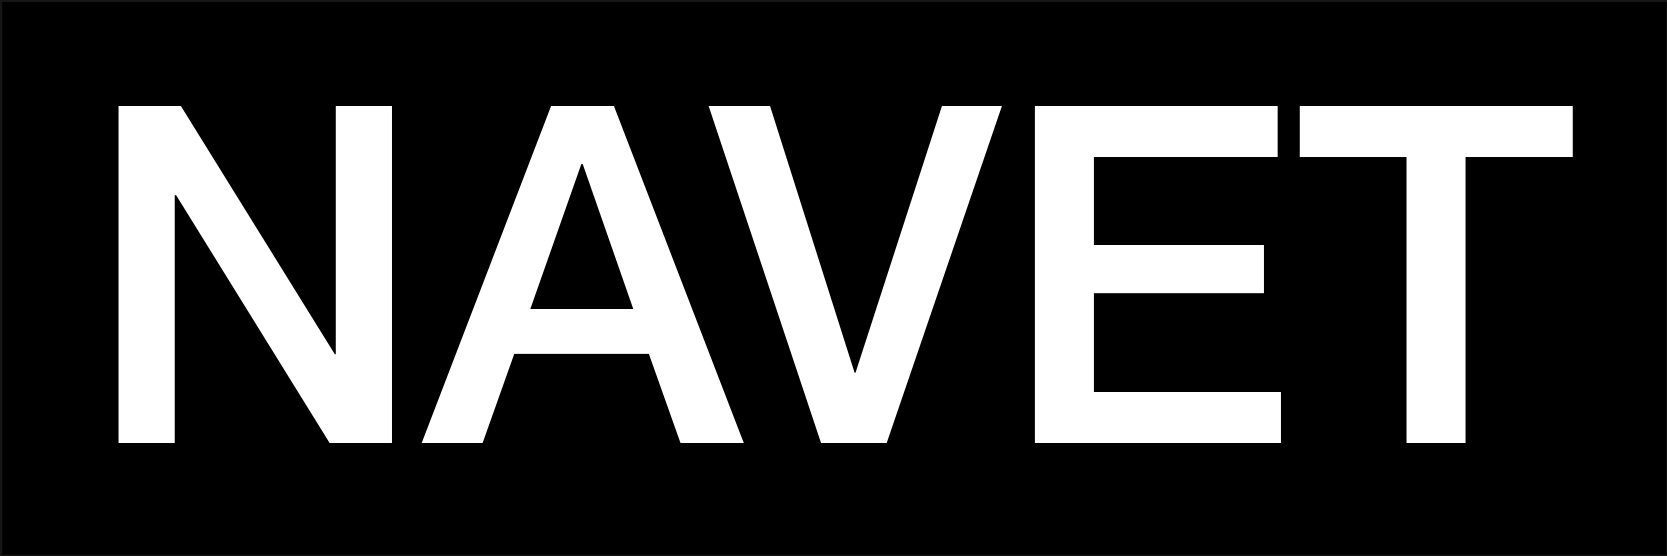 NAVET logo inverted